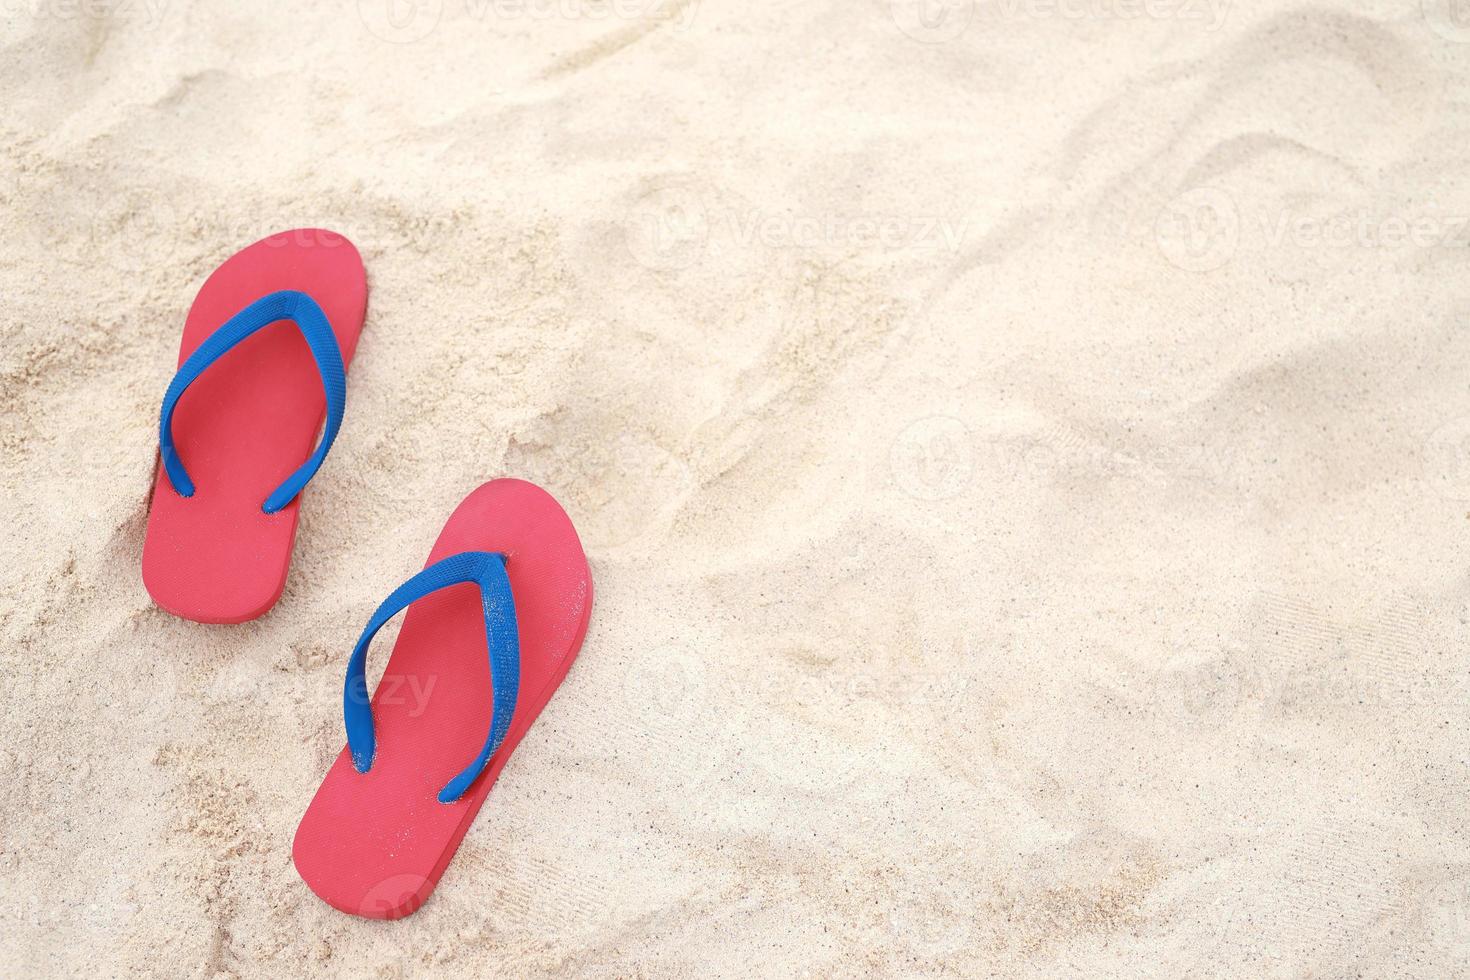 hav på de strand fotavtryck människor på de sand och toffel av fötter i sandaler skor på strand sandstrand bakgrund. resa högtider begrepp. foto